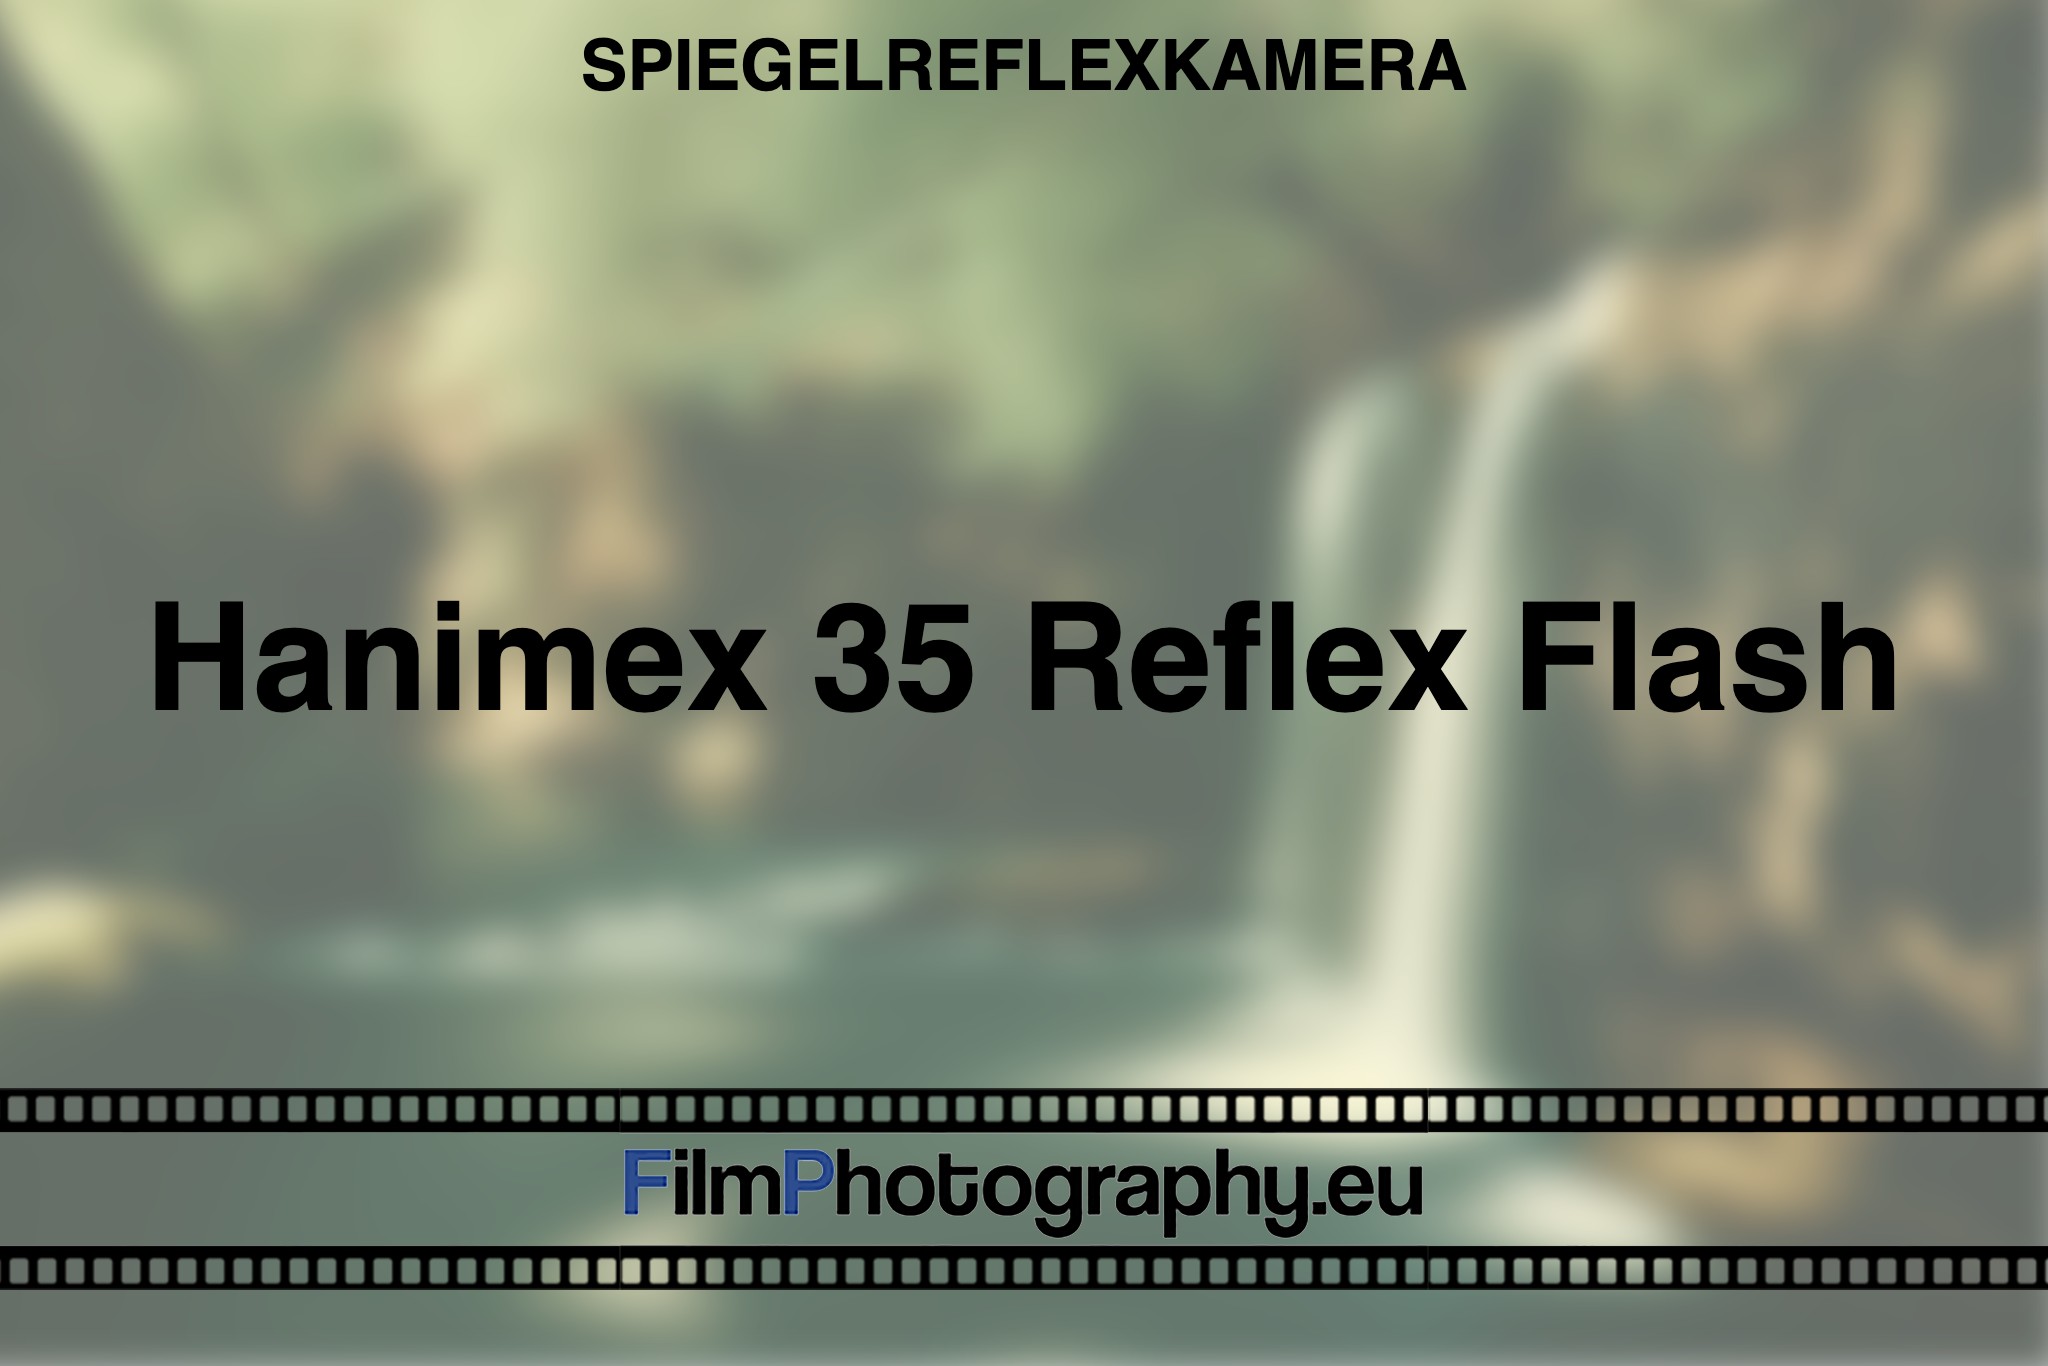 hanimex-35-reflex-flash-spiegelreflexkamera-bnv